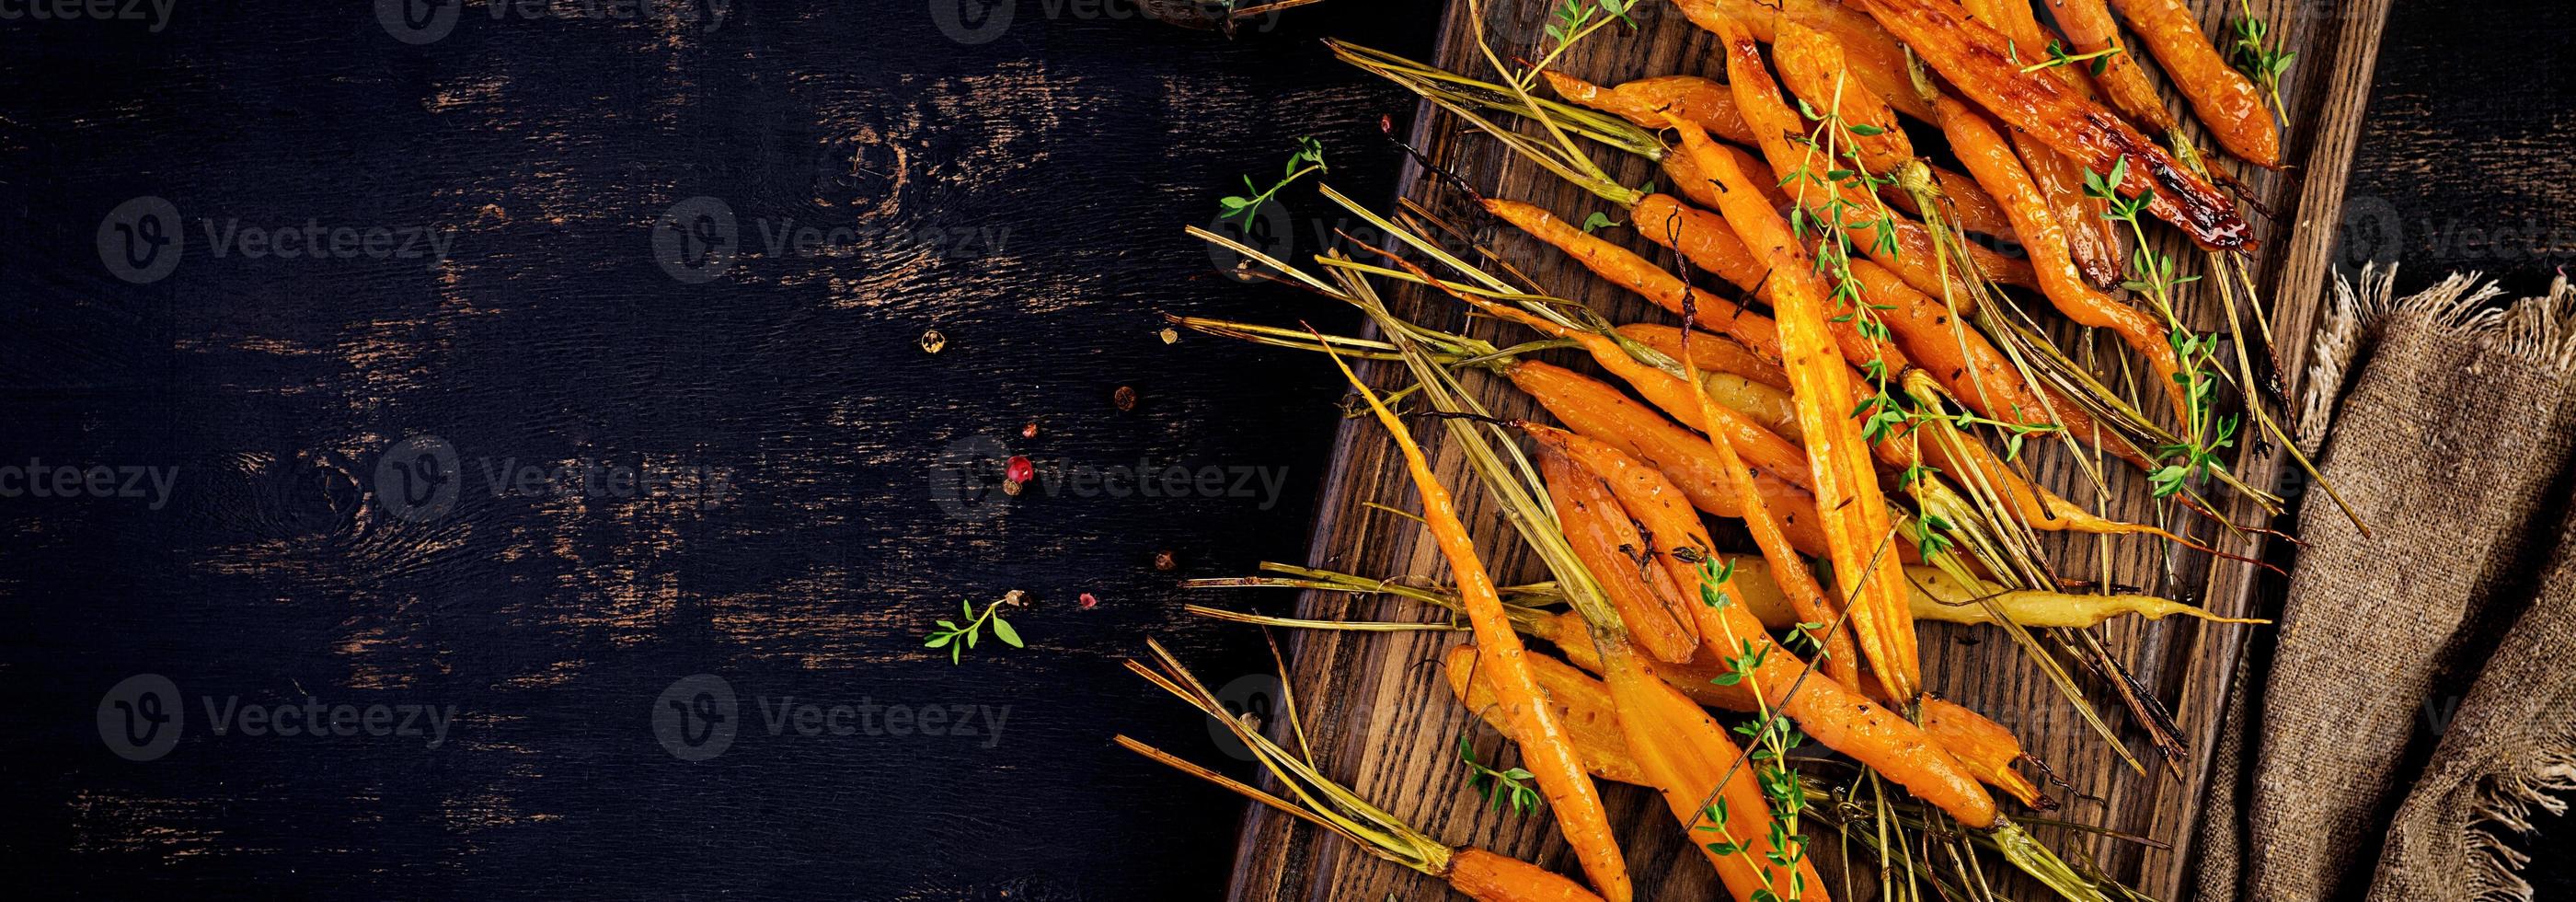 gebakken biologisch wortels met tijm, honing en citroen. biologisch veganistisch voedsel. spandoek. top visie foto